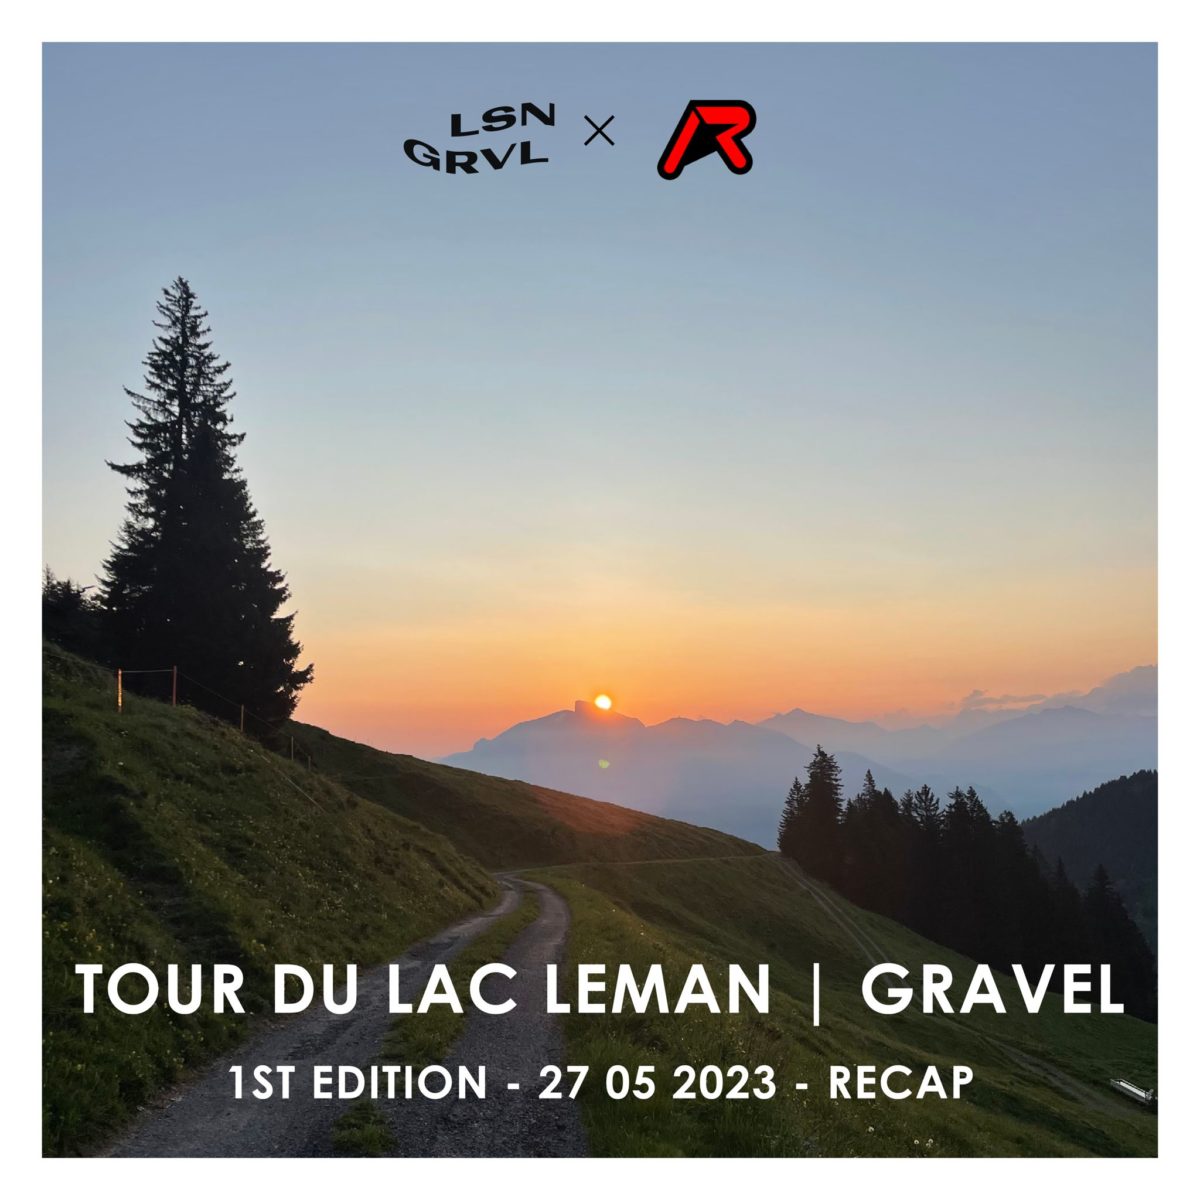 TOUR DU LAC LEMAN . GRAVEL